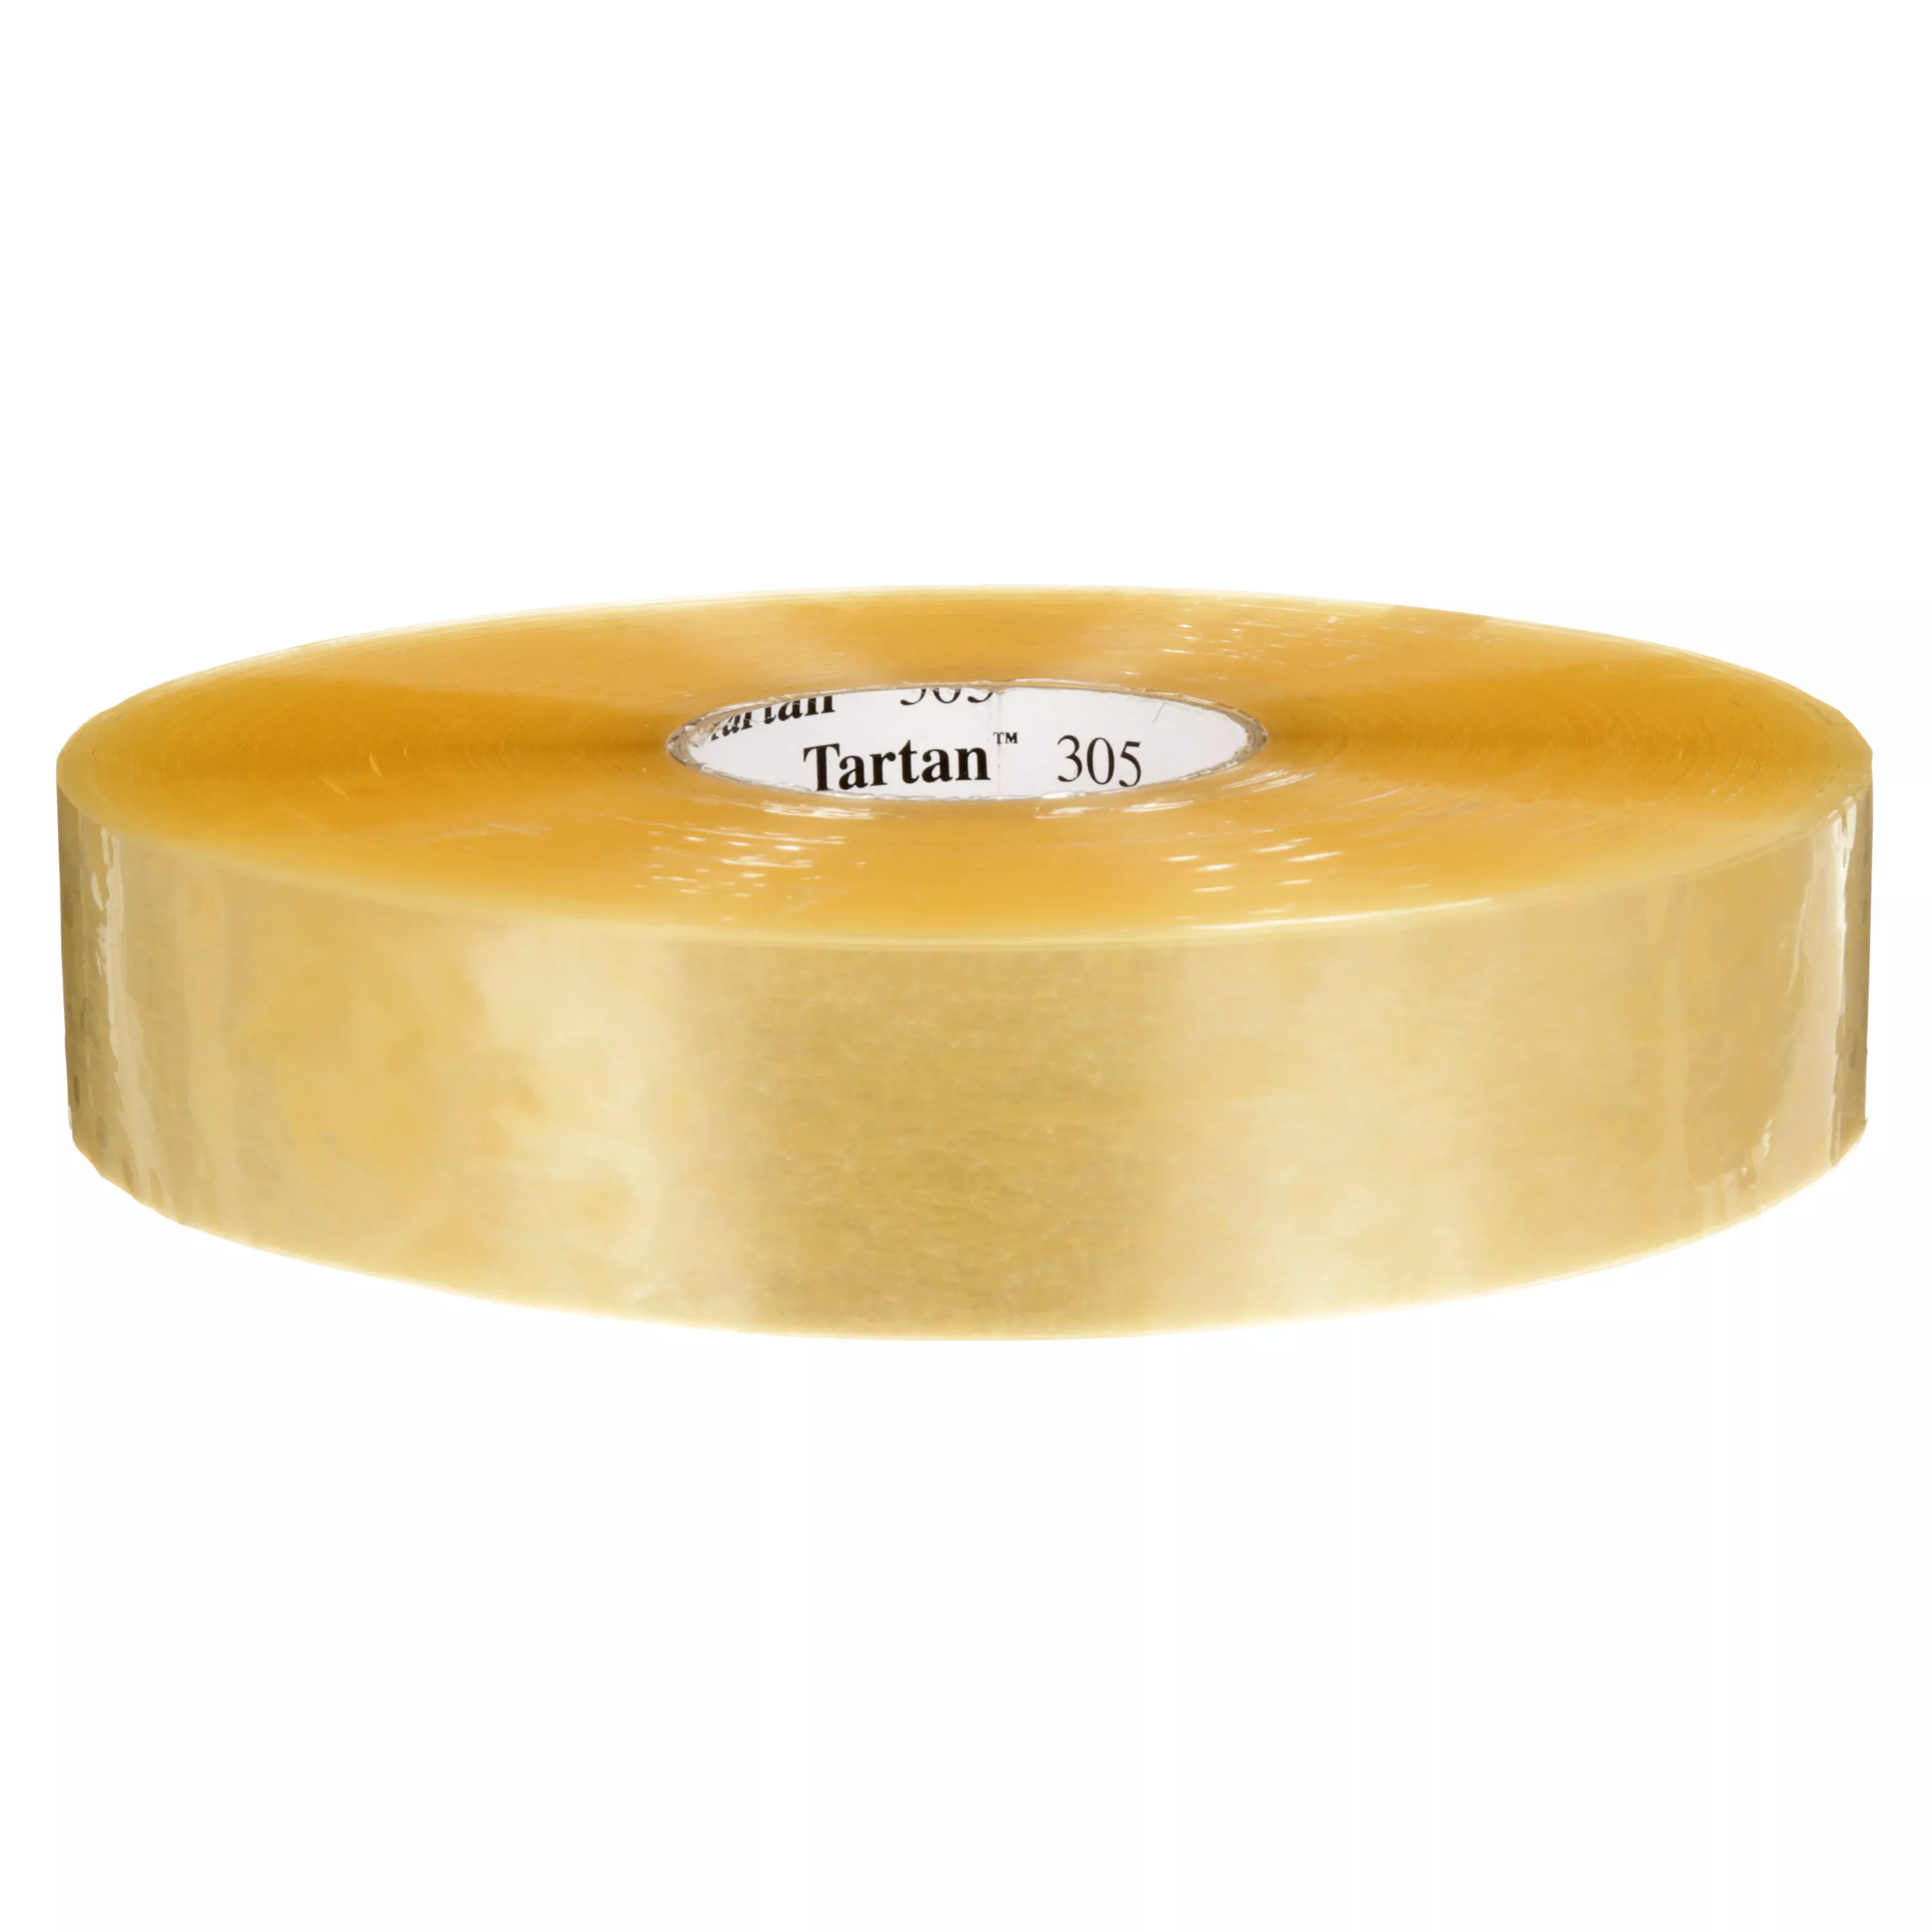 Tartan ™ Box Sealing Tape 305, Clear, 48 mm x 914 m, 6 Rolls/Case